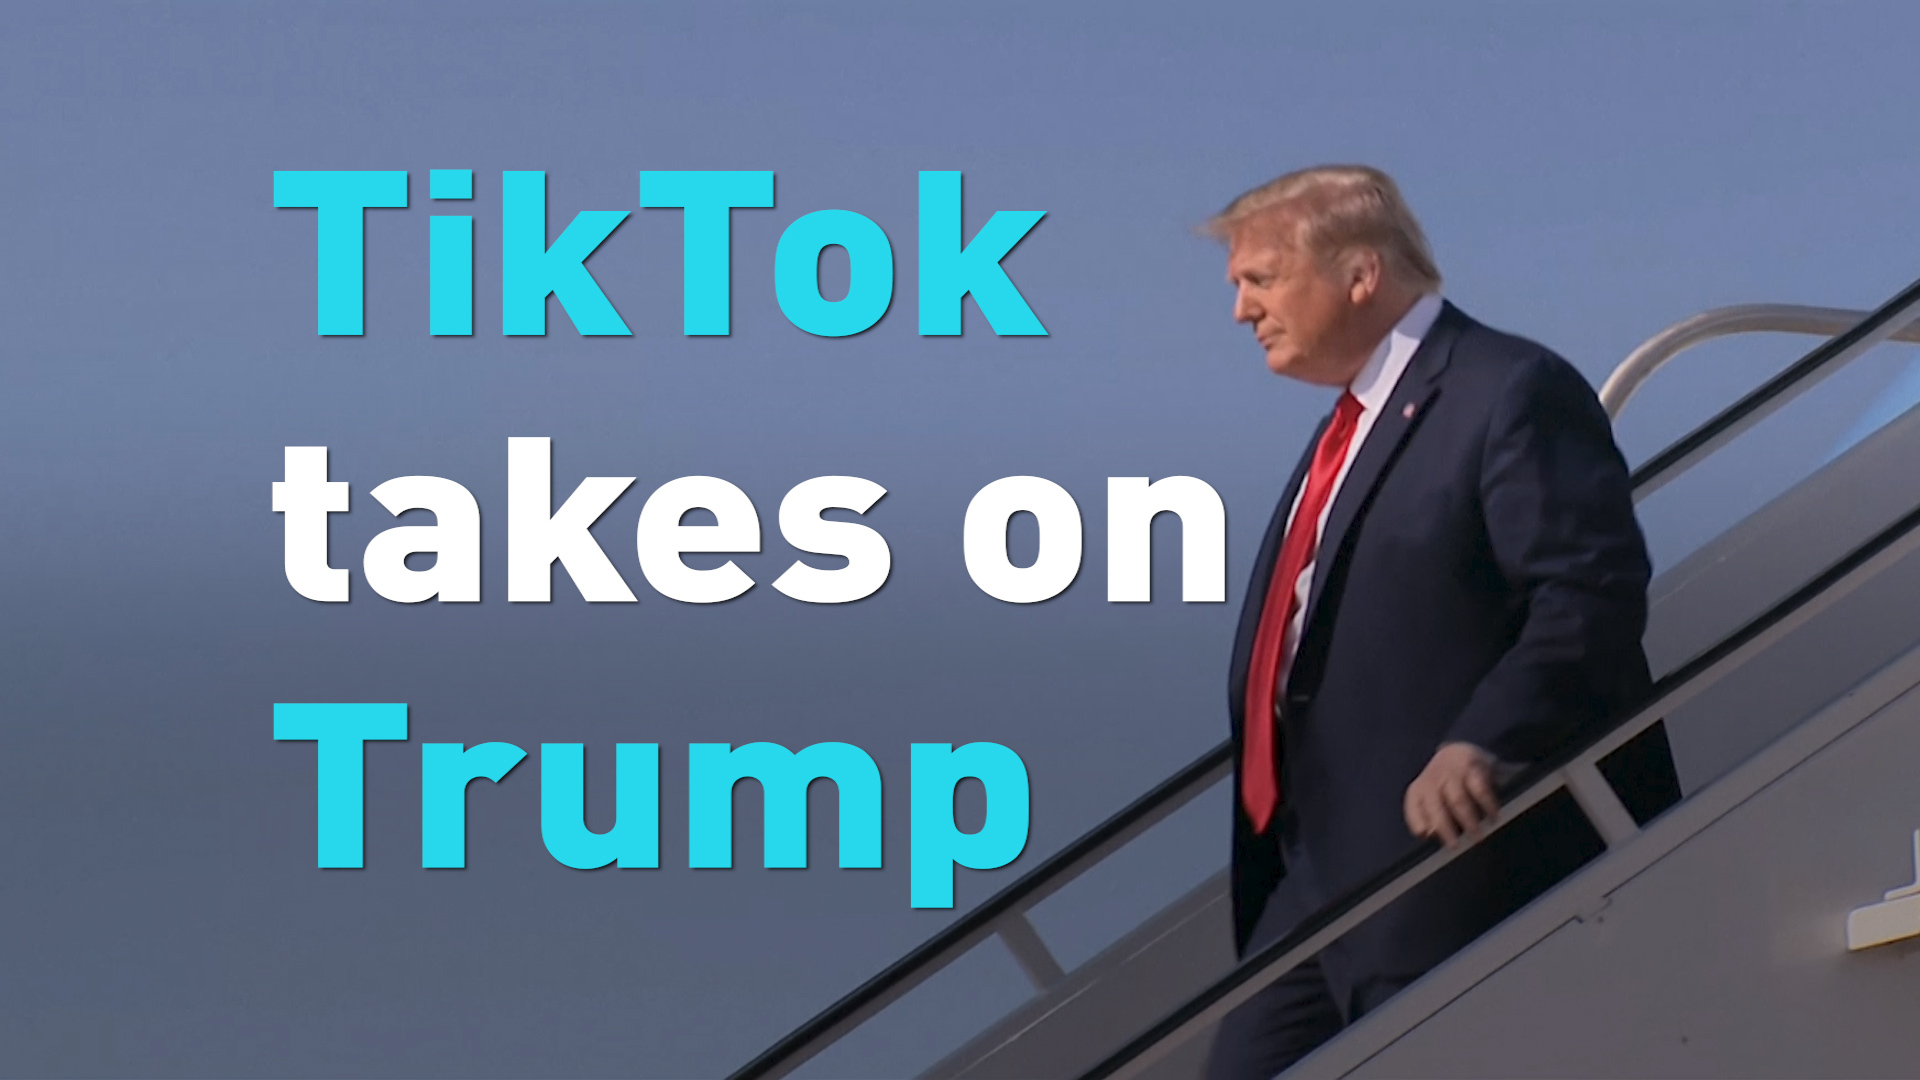 TikTok users take on Trump - CGTN